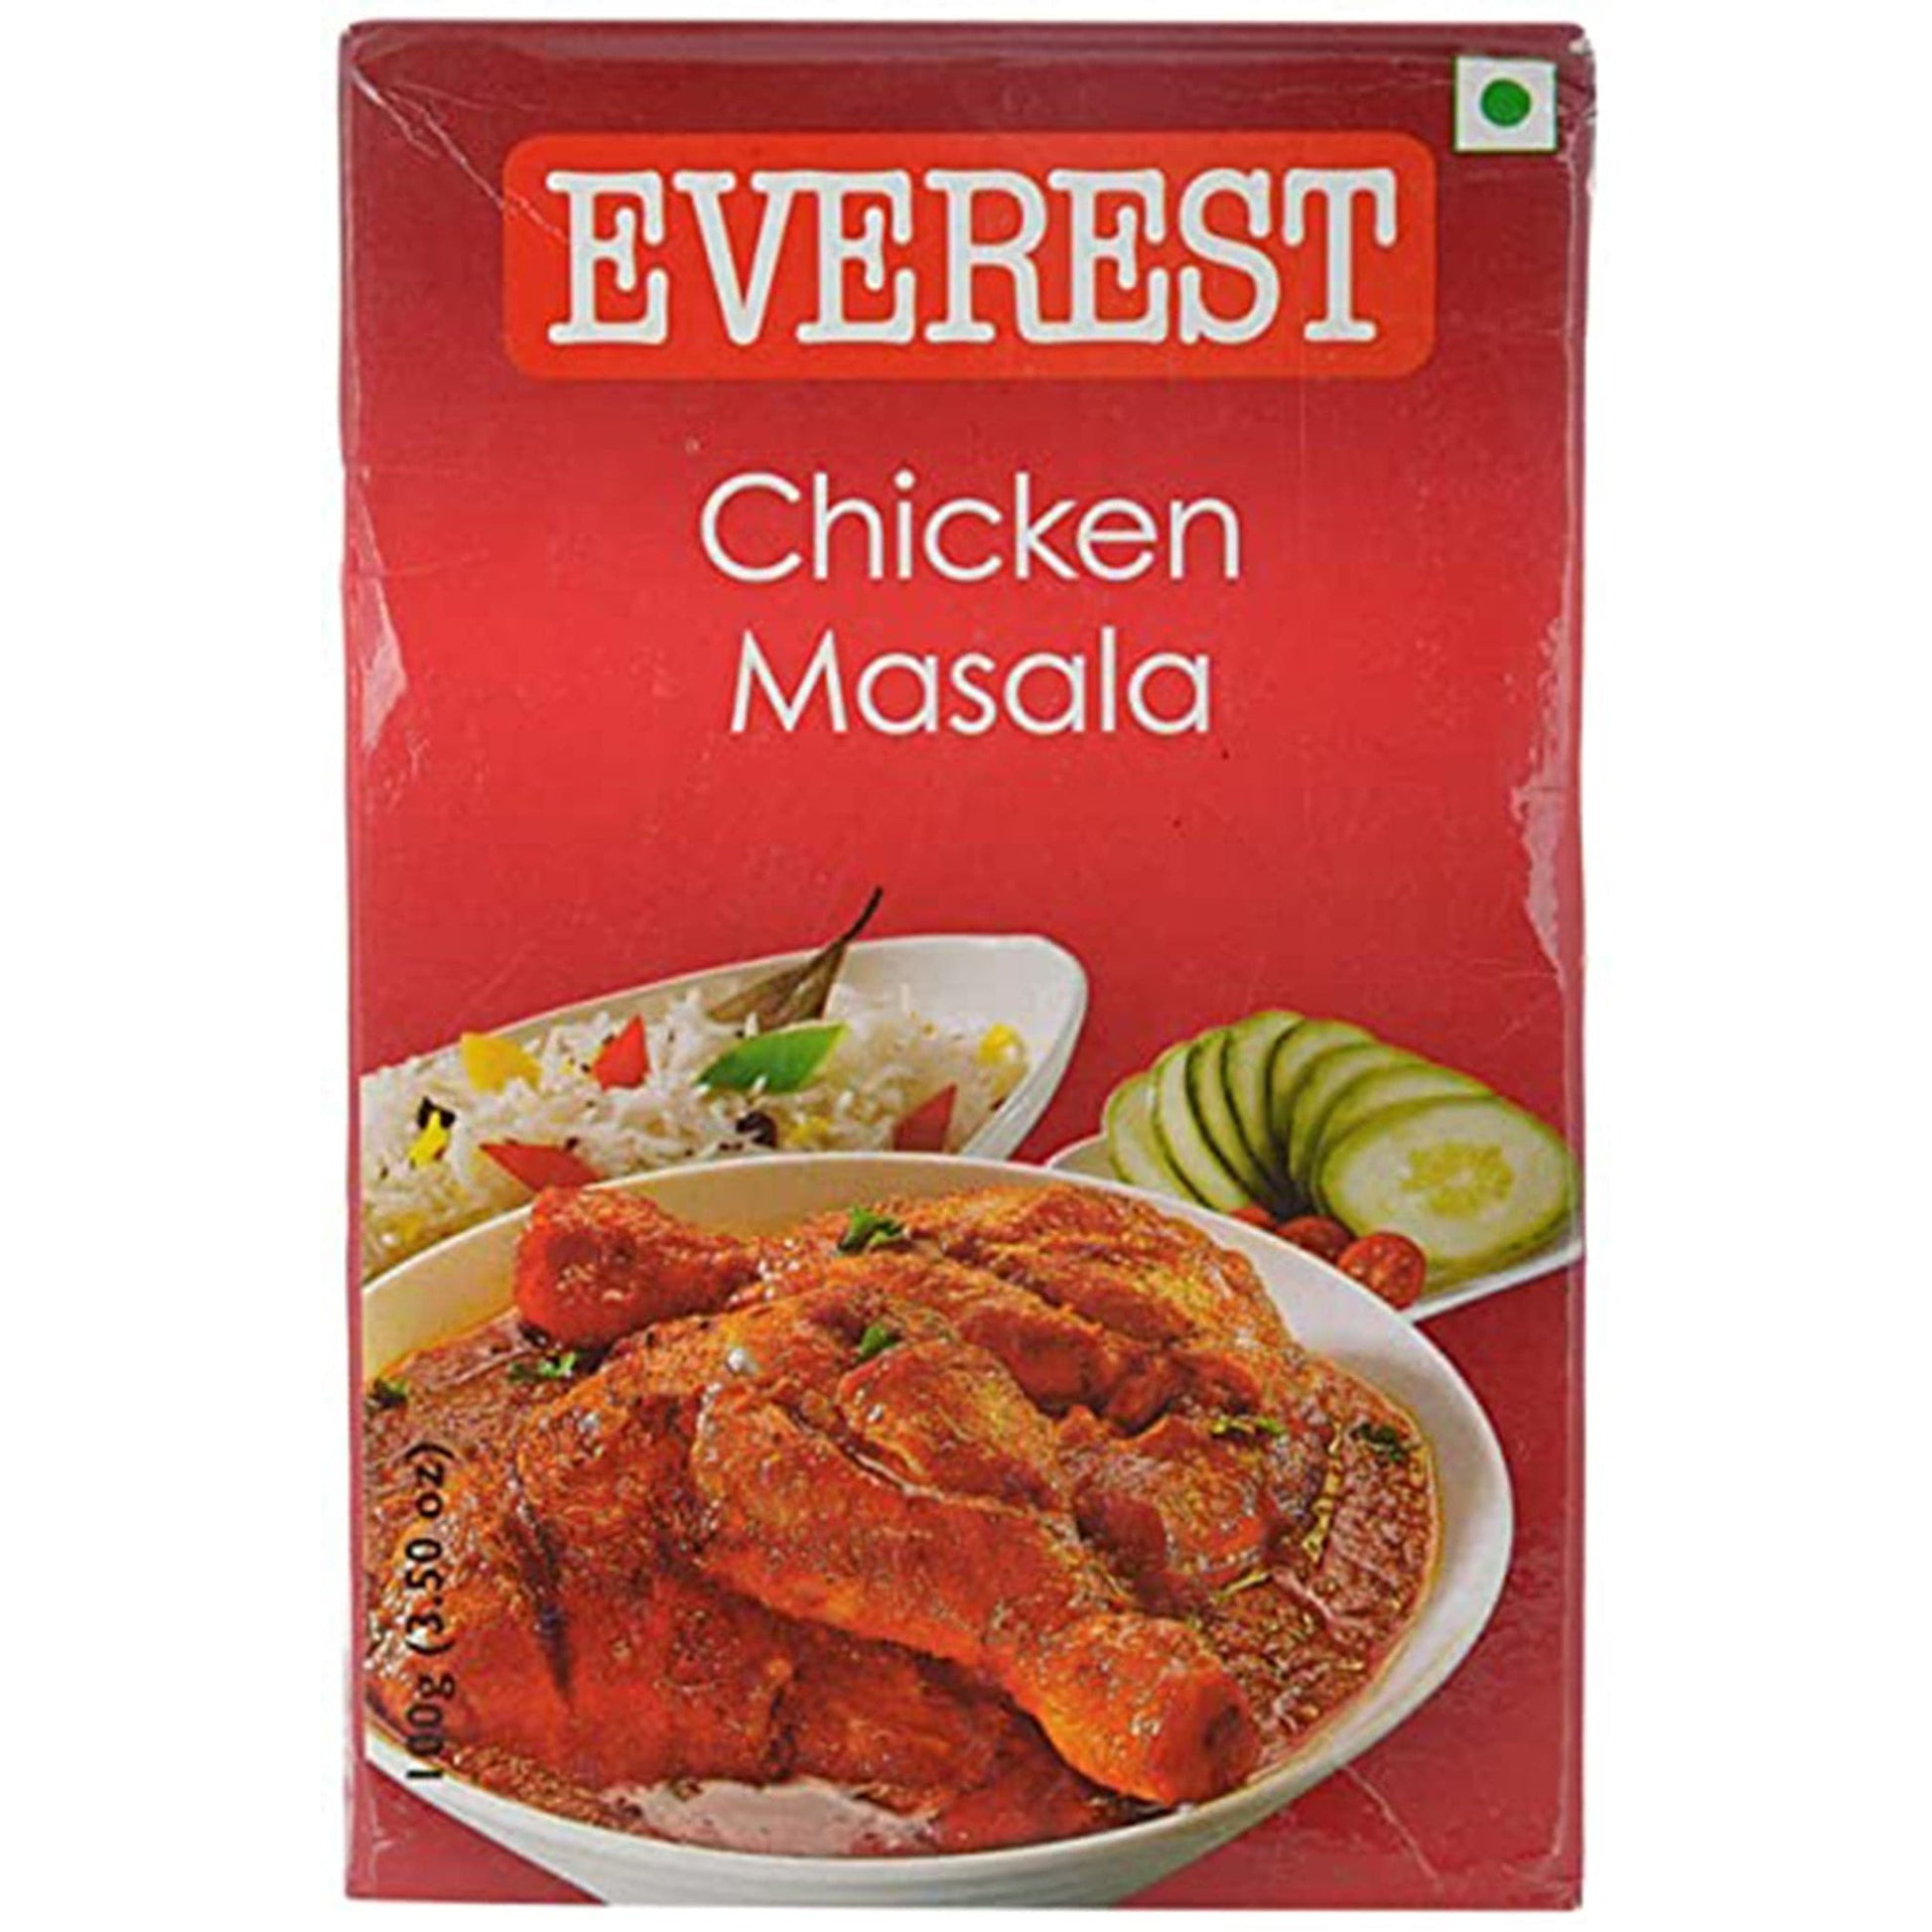 Everest Chicken Masala (7047392231611)